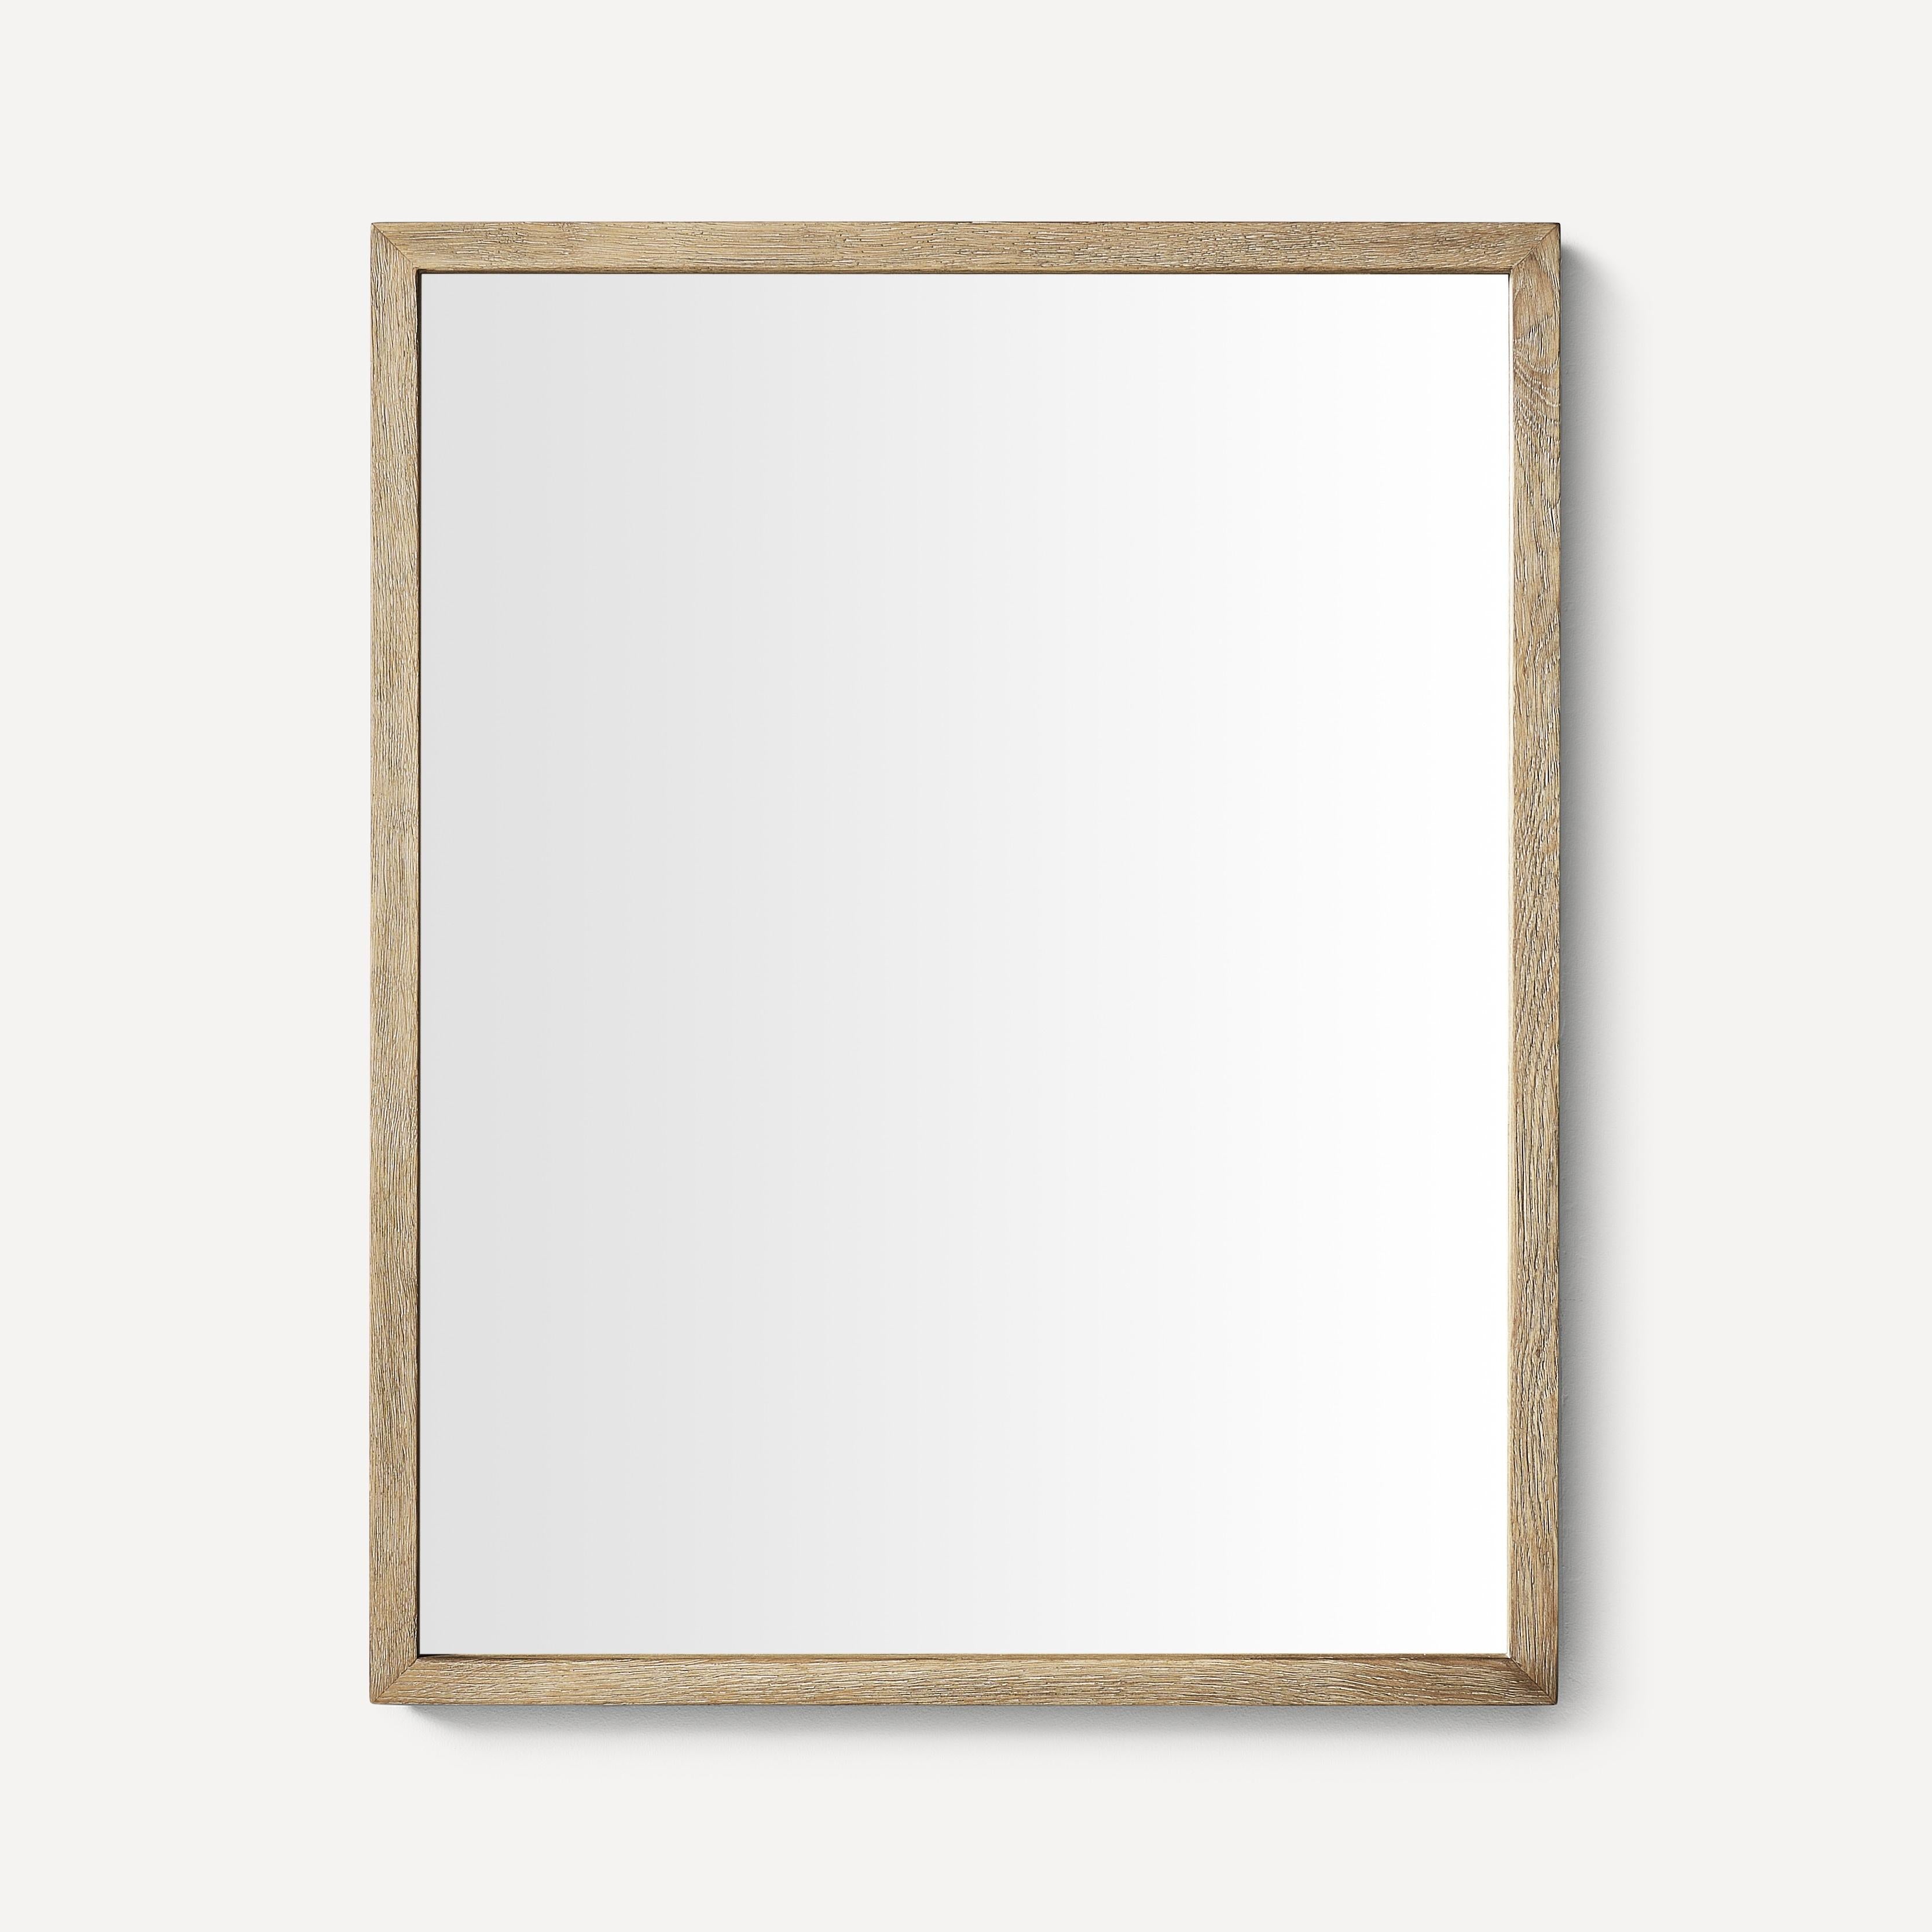 Robern Thin Framed Wood Mirror, 24"x 30"x 1-1/2"